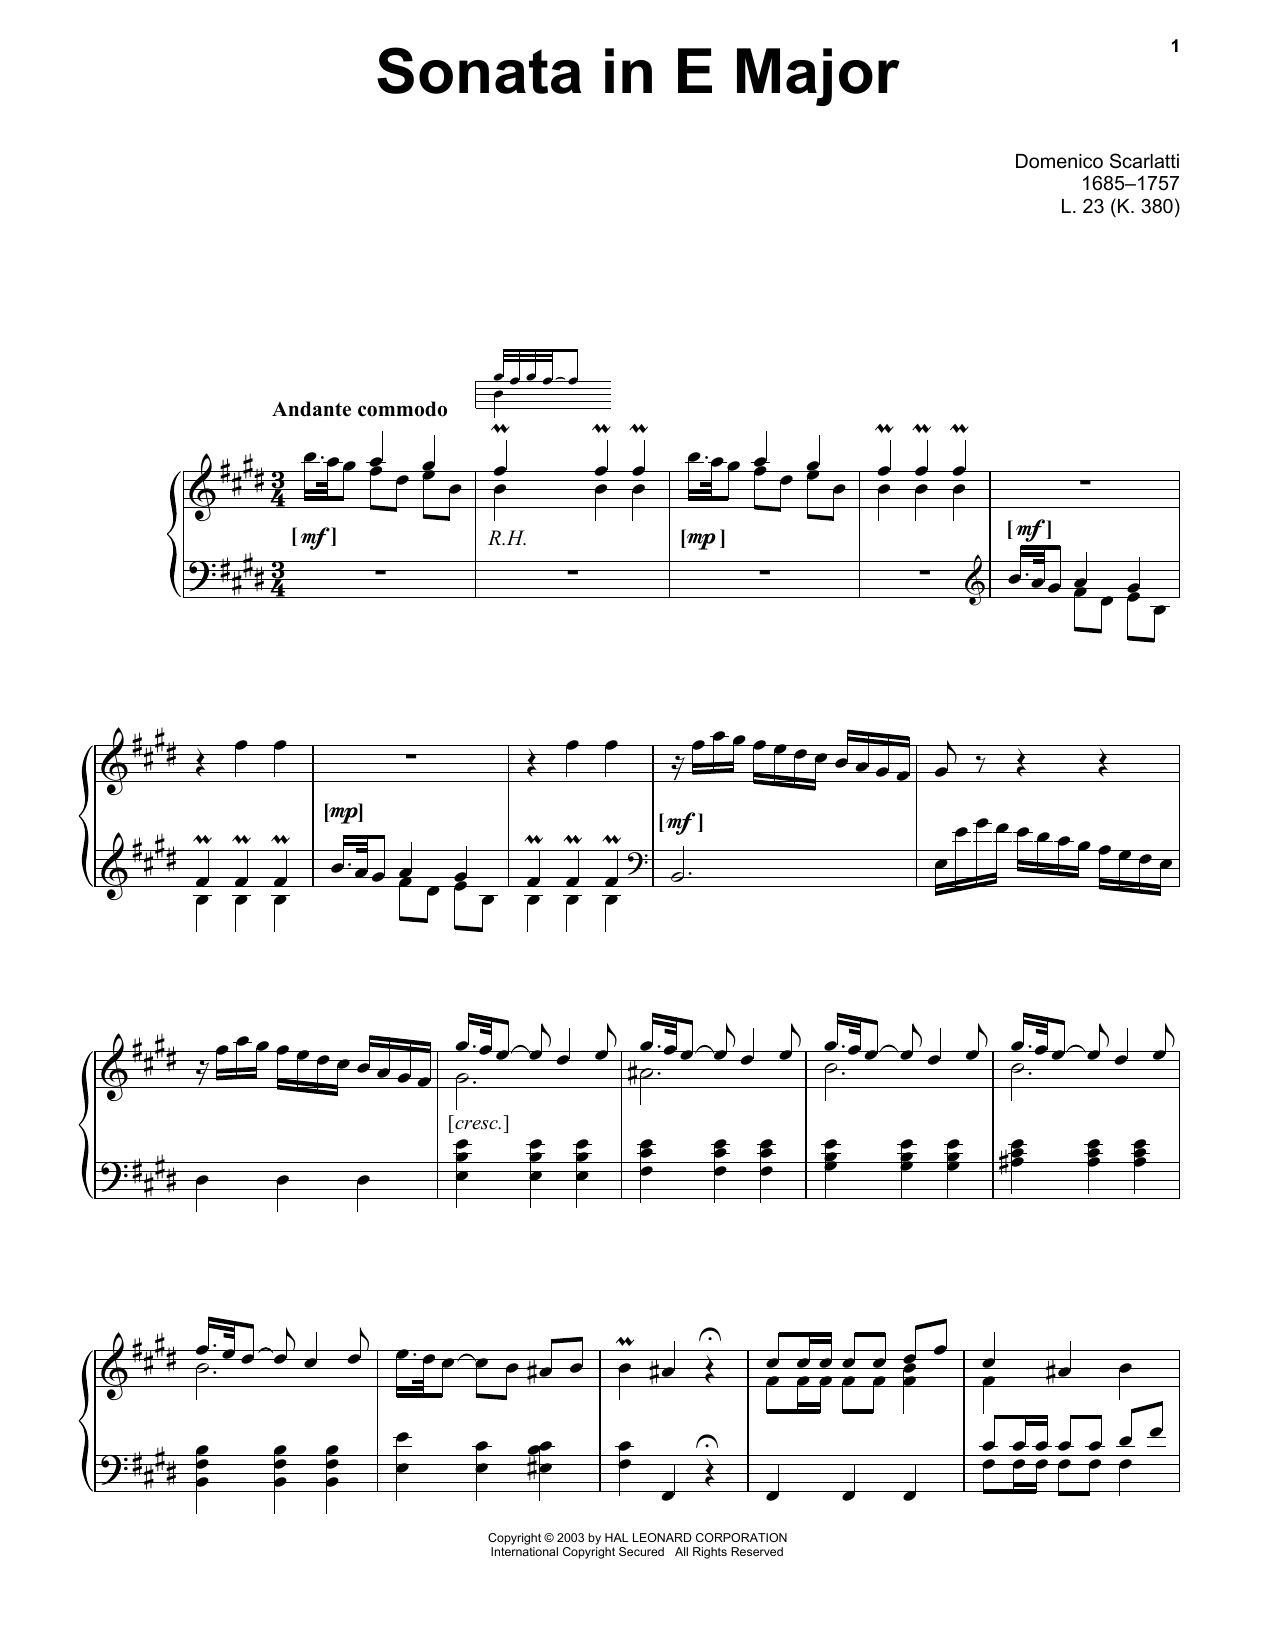 Domenico Scarlatti Sonata In E Major, L. 23 Sheet Music Notes & Chords for Piano Solo - Download or Print PDF